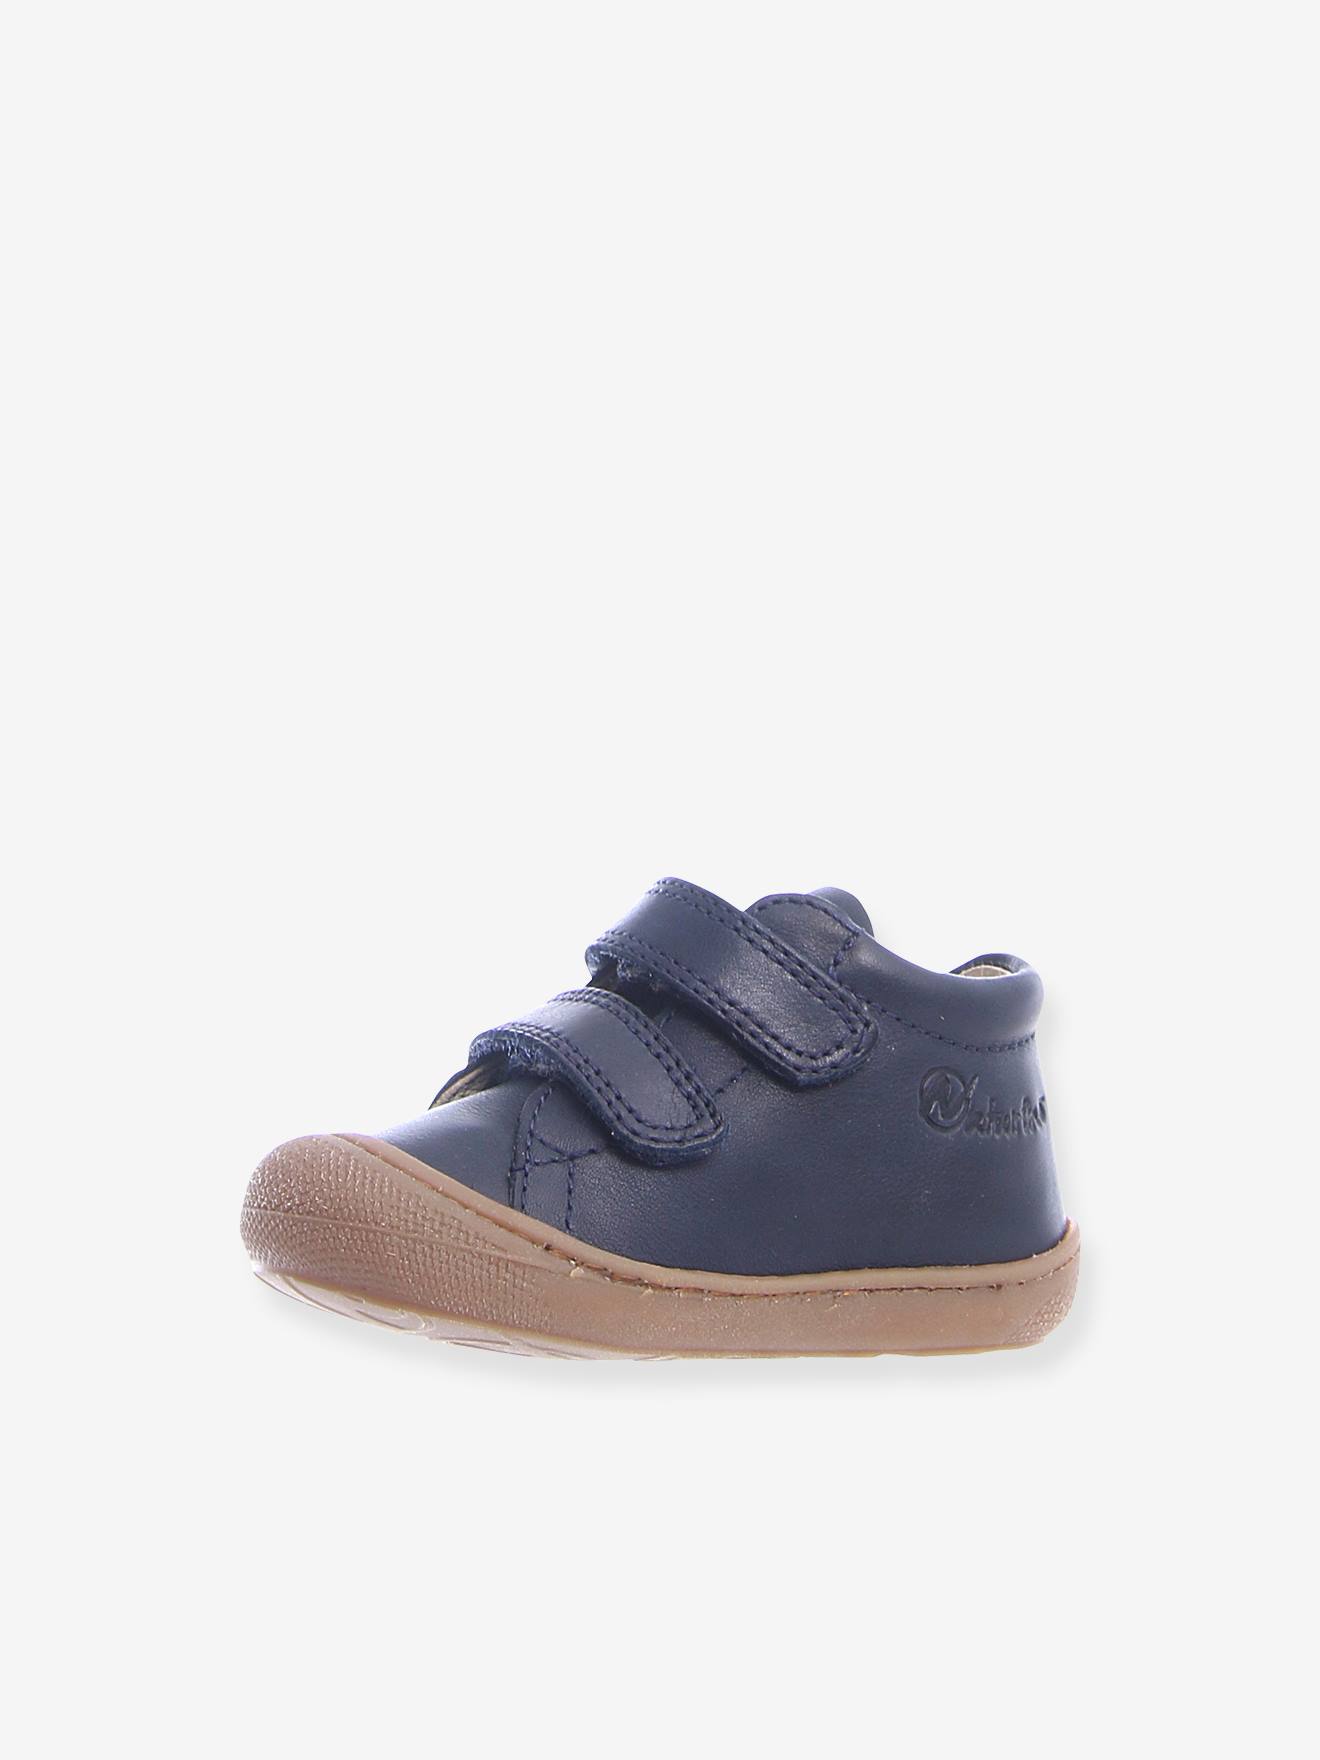 Botines para bebé Cocoon Velcro NATURINO® Primeros Pasos azul oscuro liso